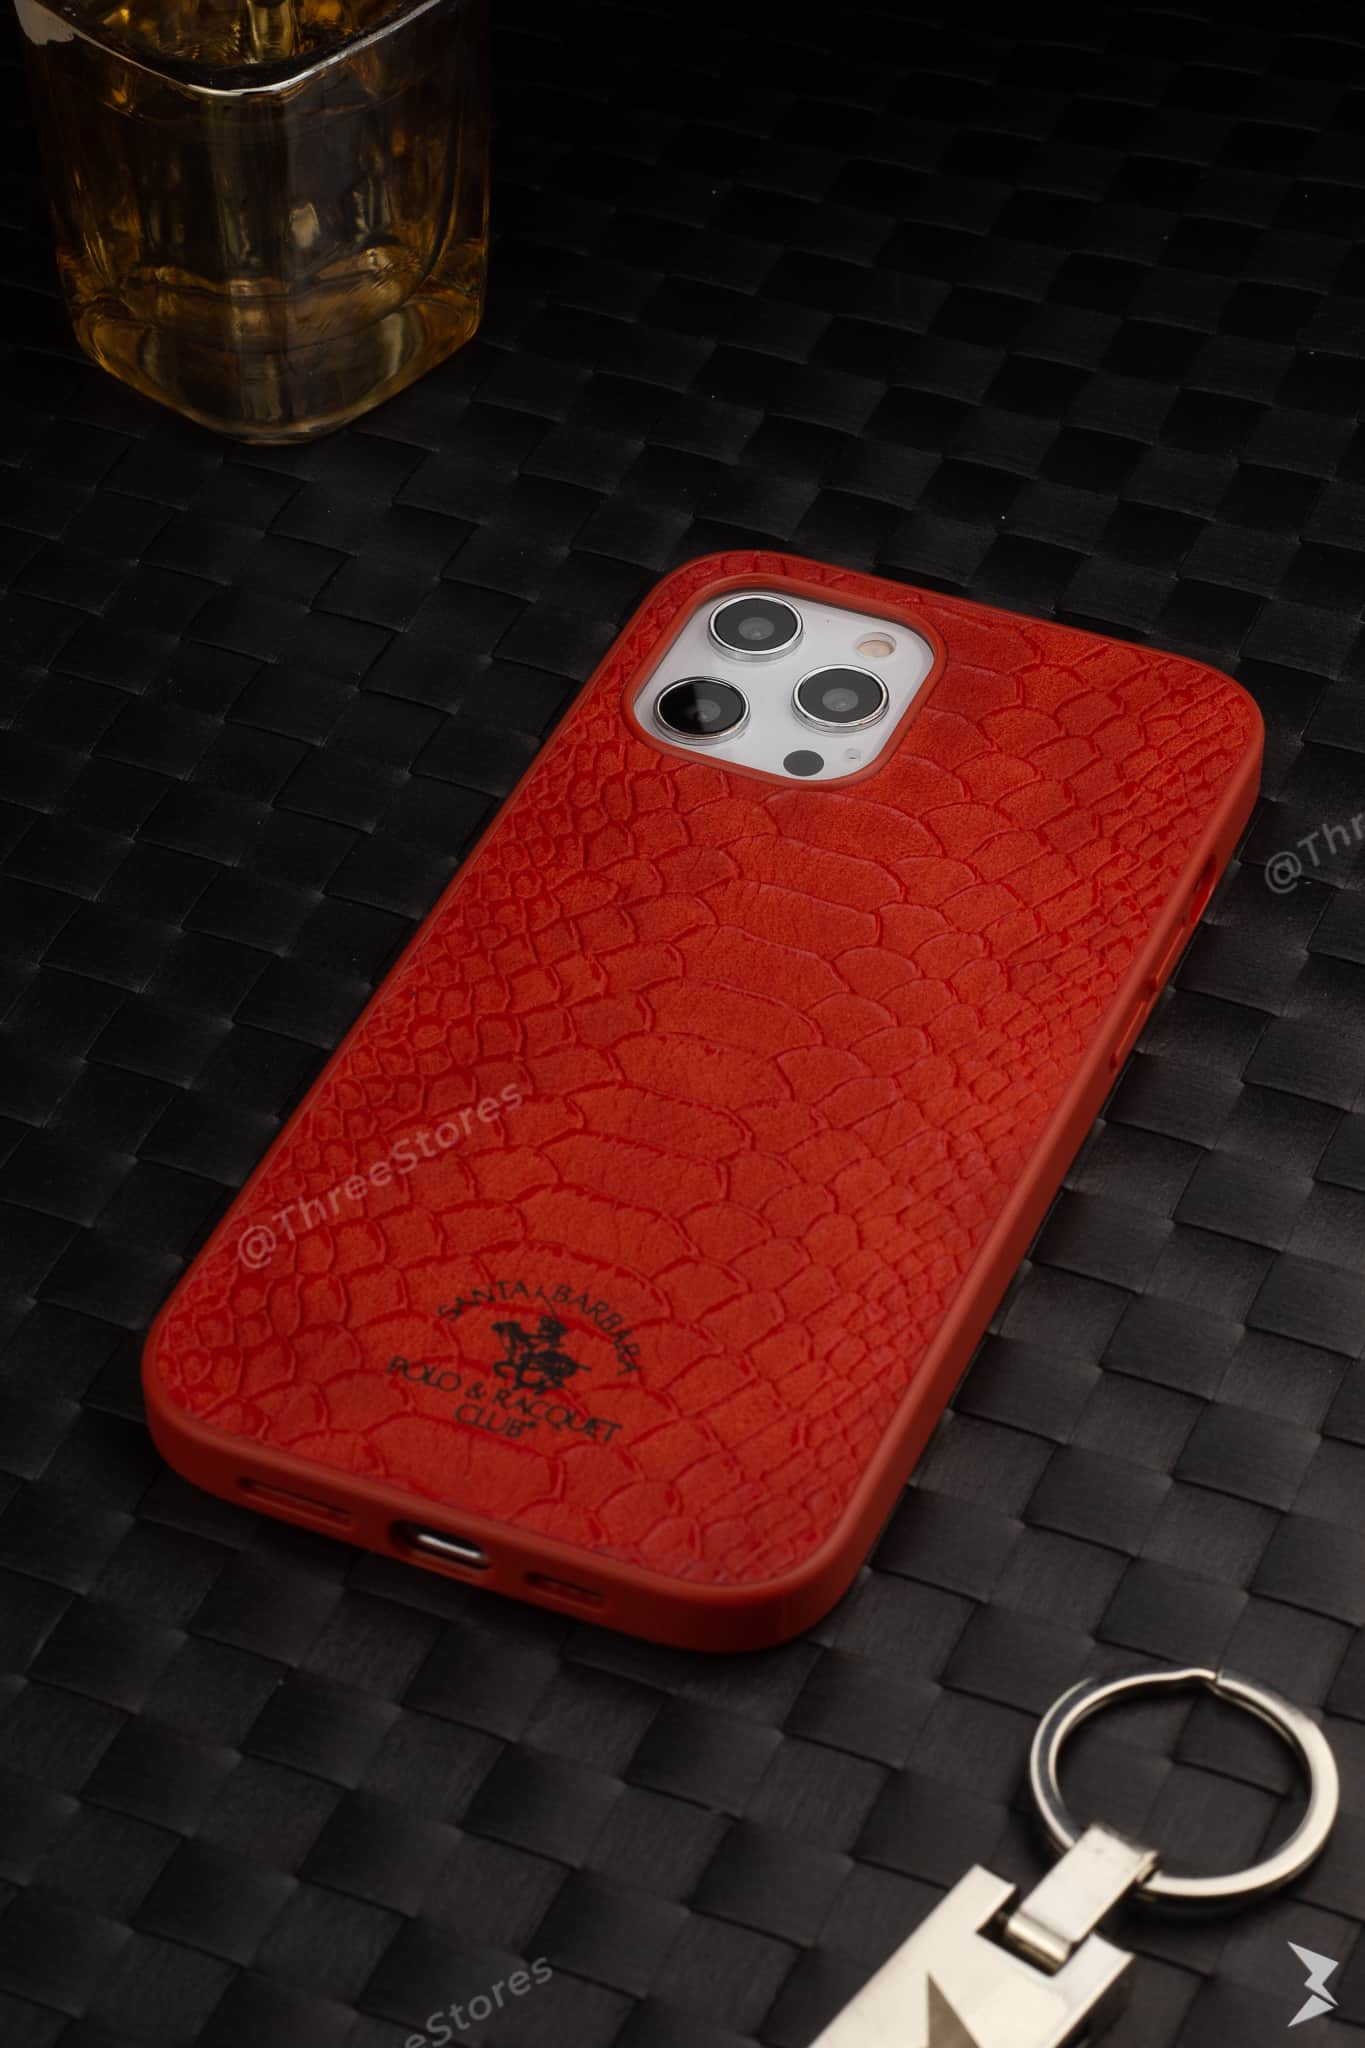 Santa Aliga Leather Case iPhone 12 Pro Max